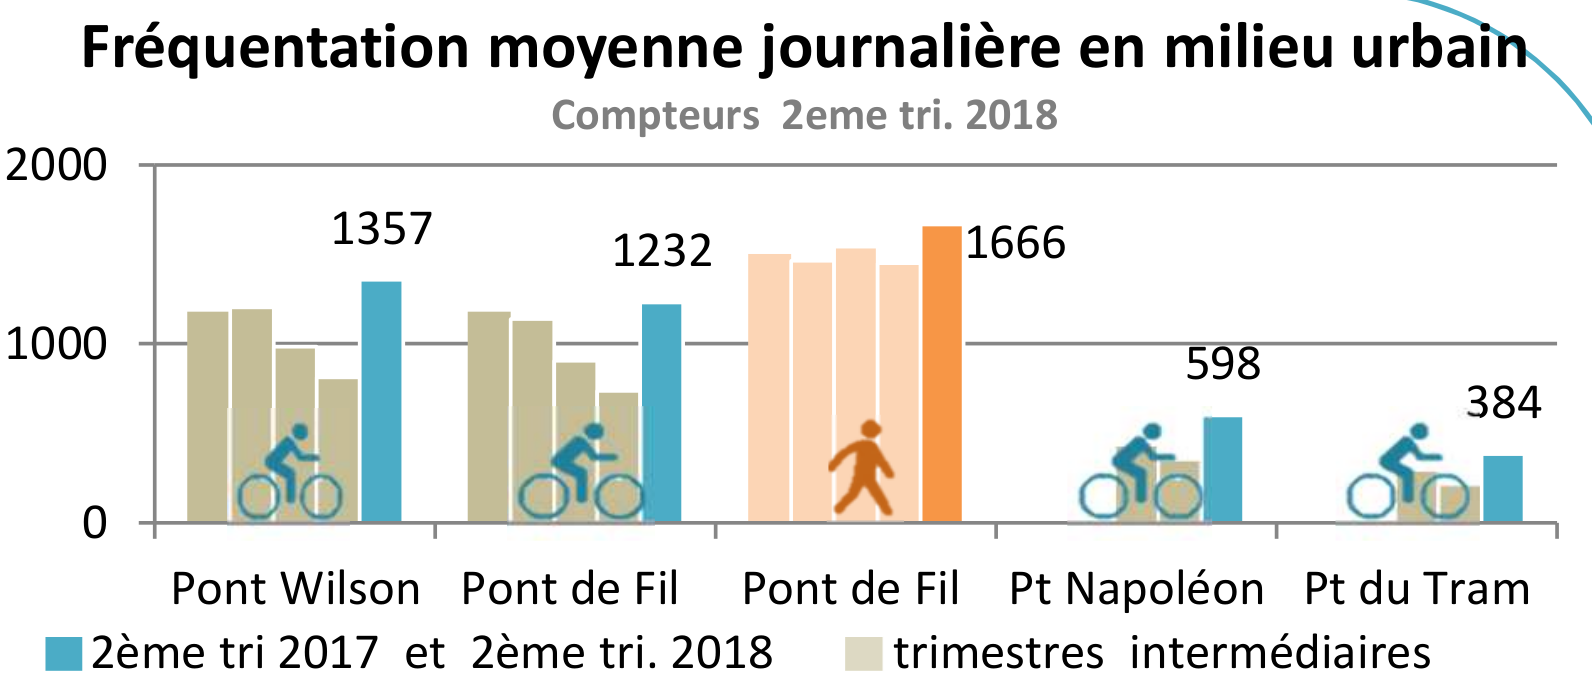 Infographie des relévés des compteurs fixes piétons et vélos existant sur les ponts de l'agglomération tourangelle.